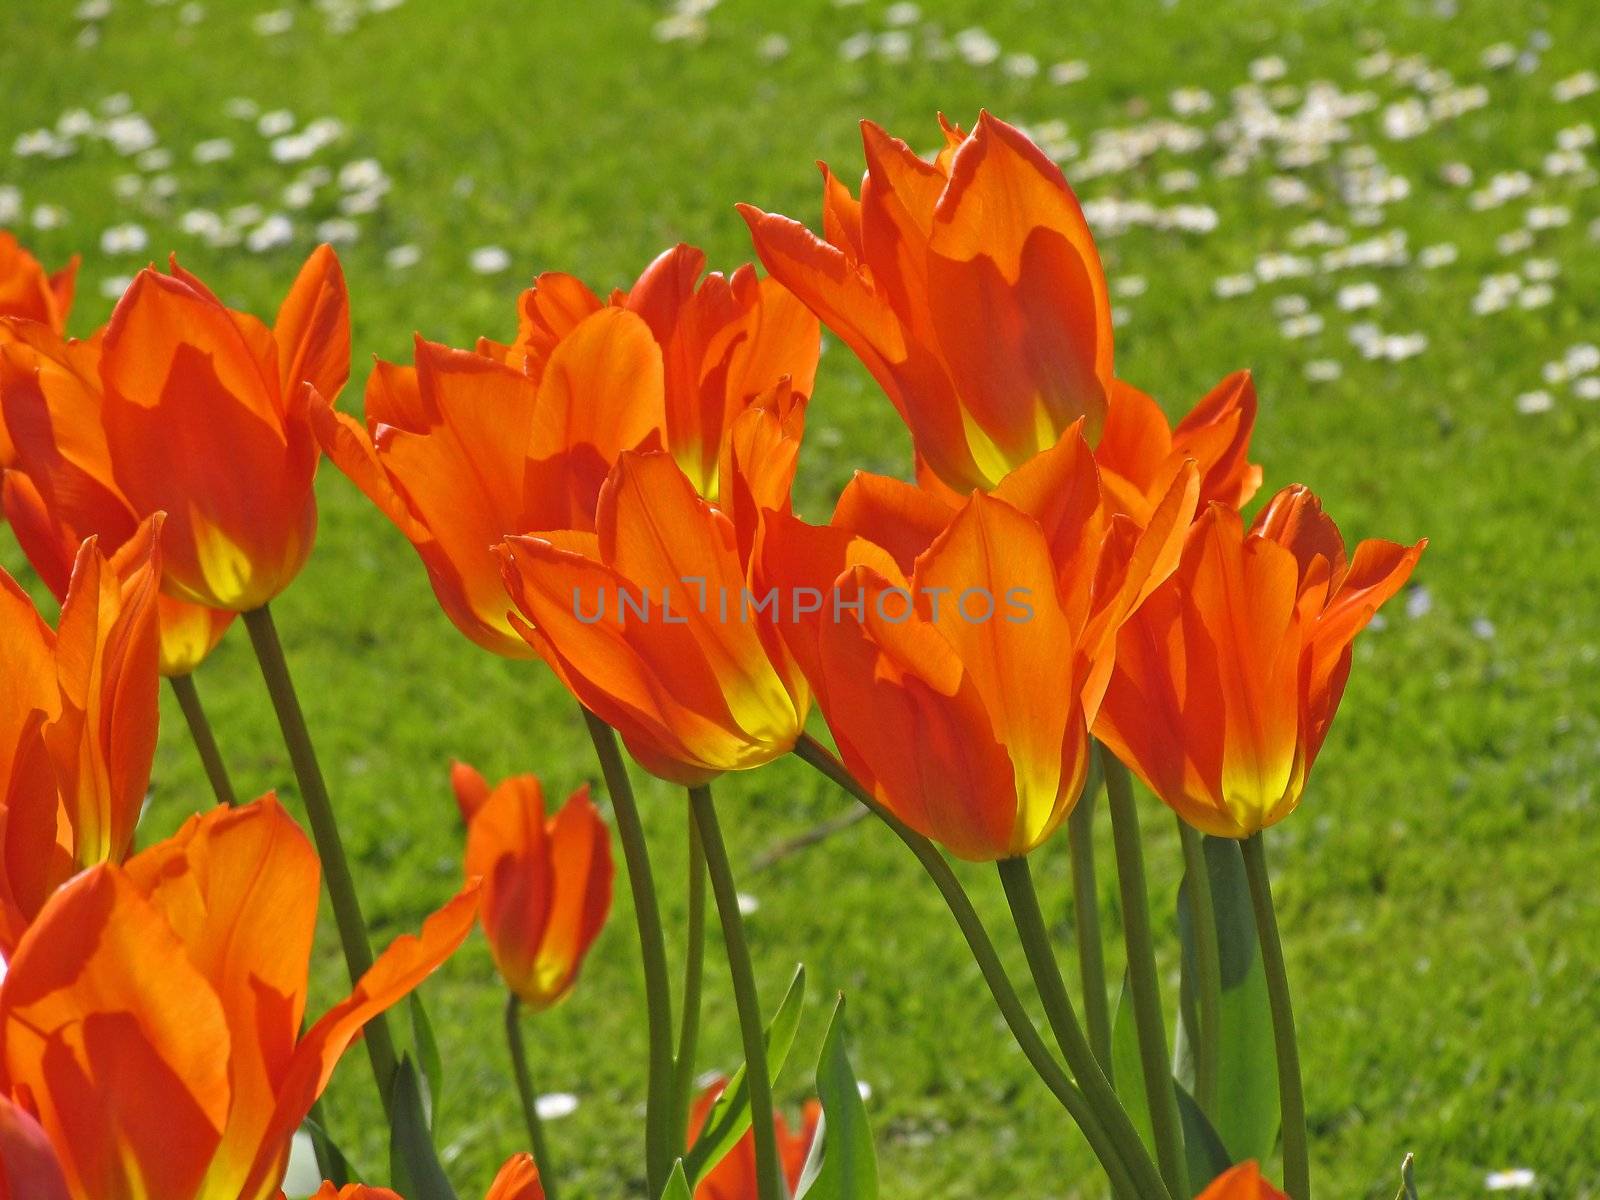 Tulipa, Tulips by Natureandmore